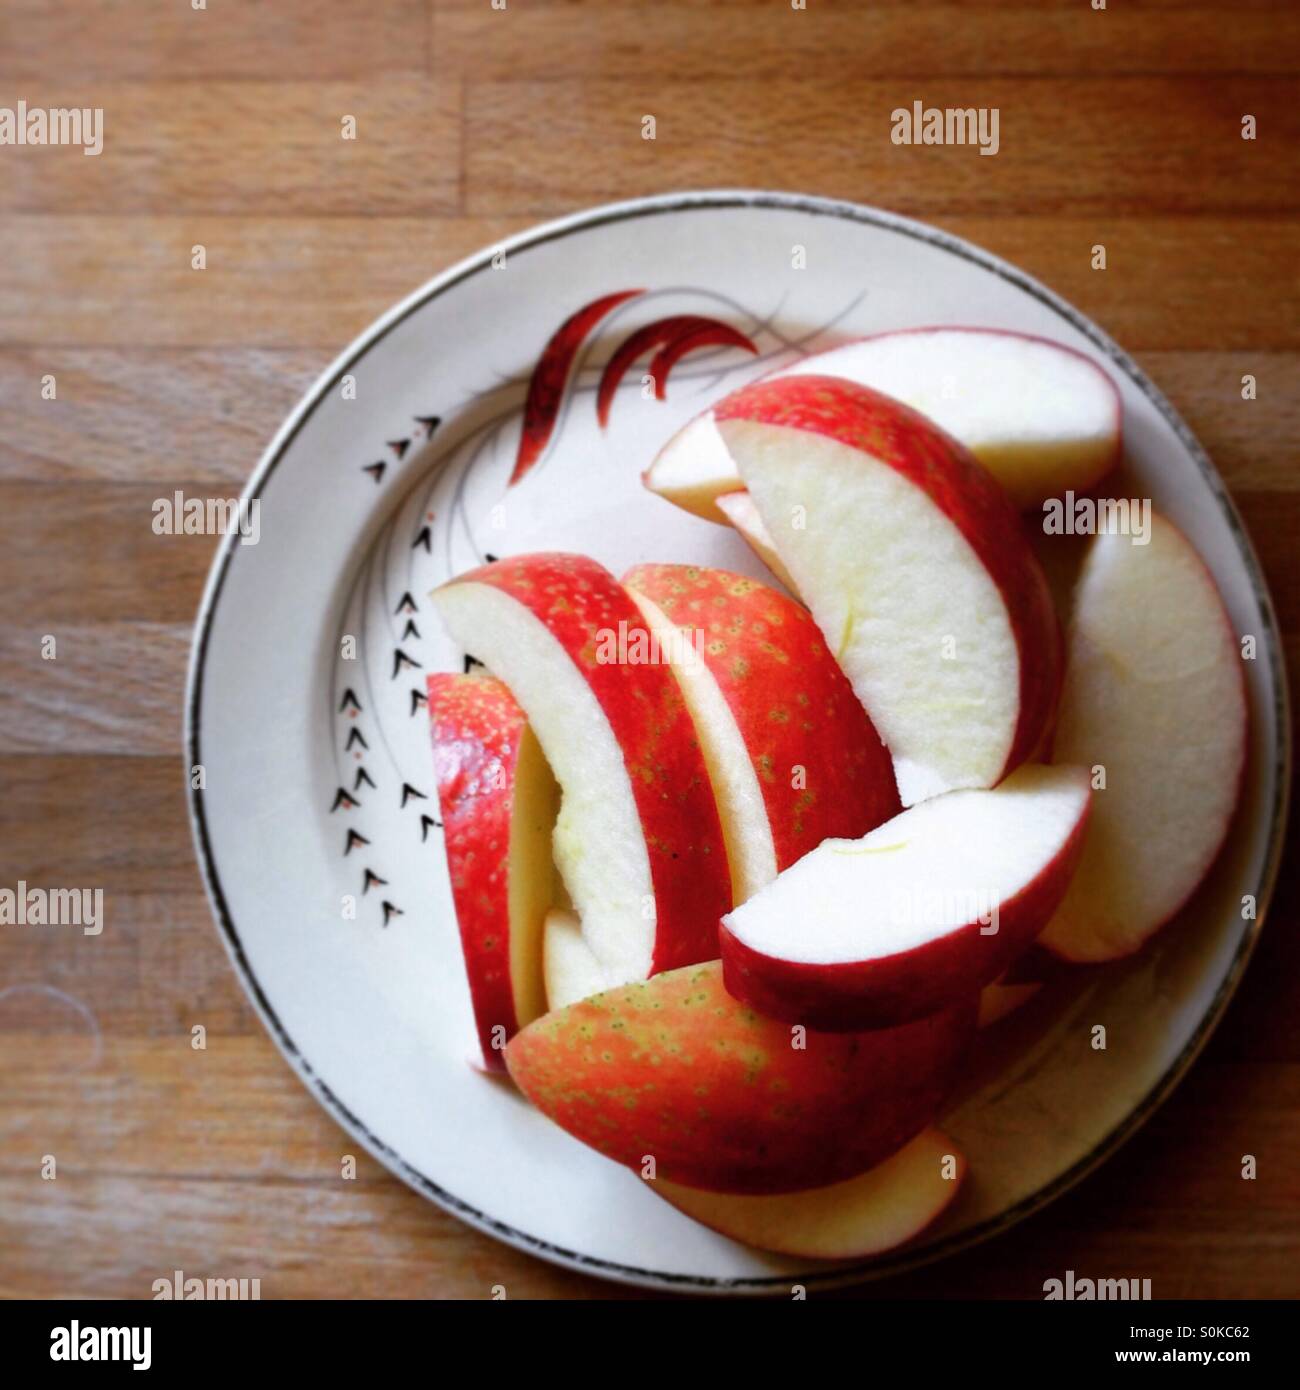 Sliced Apple on vintage dish Stock Photo